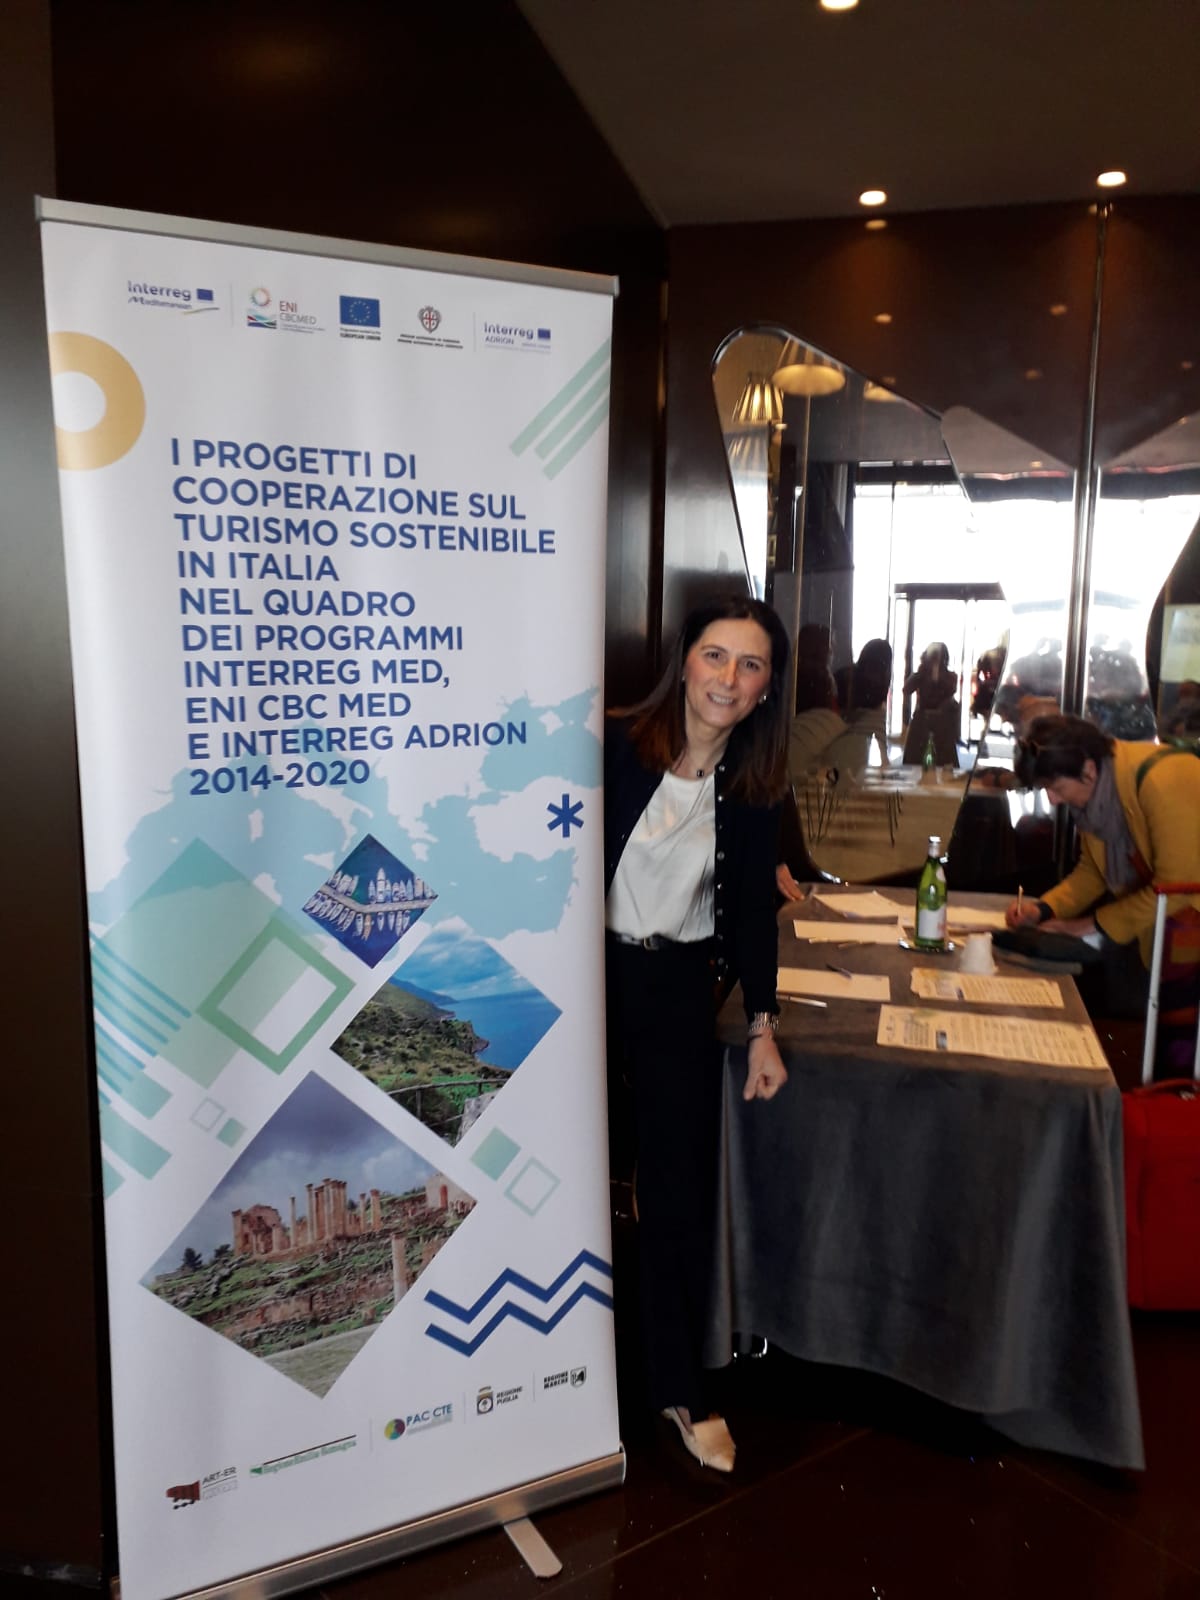 Galleria Bari, 30 marzo 2023 – Evento “Presentazione del Rapporto di Valutazione dei progetti di cooperazione sul Turismo Sostenibile, nel quadro dei Programmi Interreg Euro-MED, ENI CBC Med ed Interreg ADRION 2014-2020” - Diapositiva 1 di 14